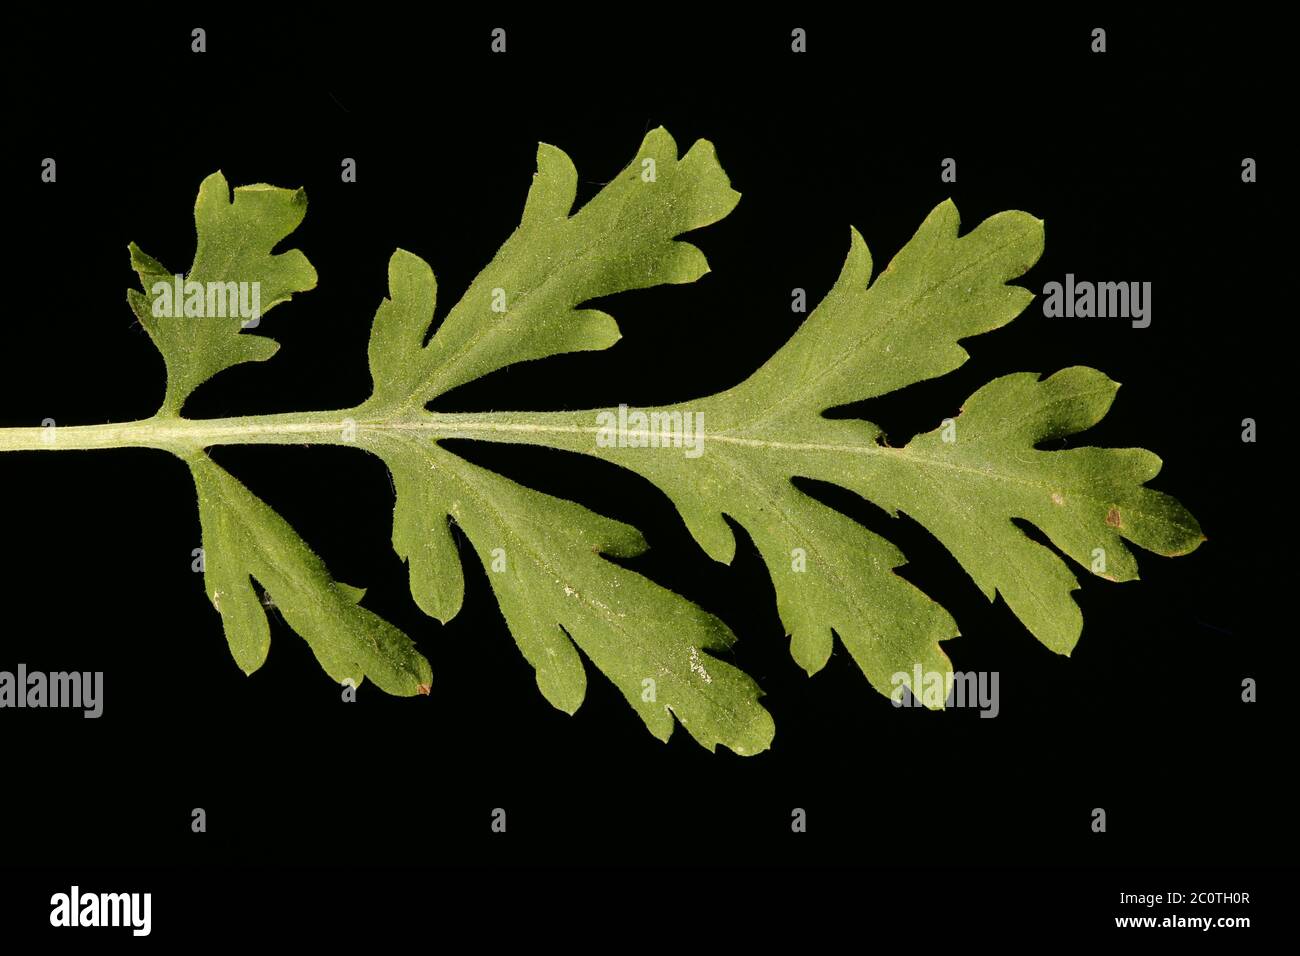 Feverfew (Tanacetum parthenium). Leaf Closeup Stock Photo